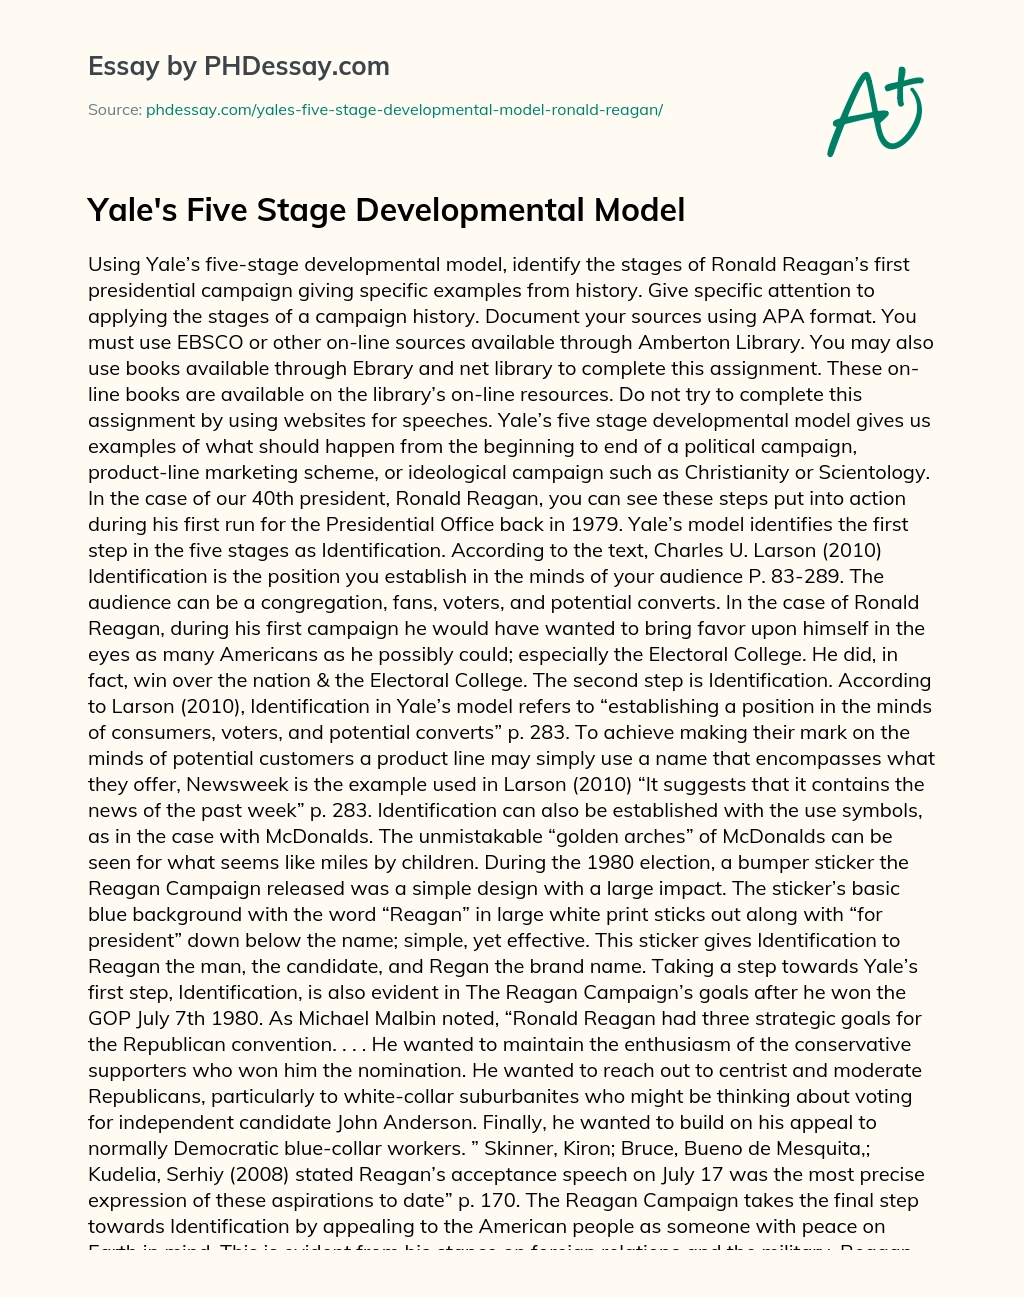 Yale’s Five Stage Developmental Model essay